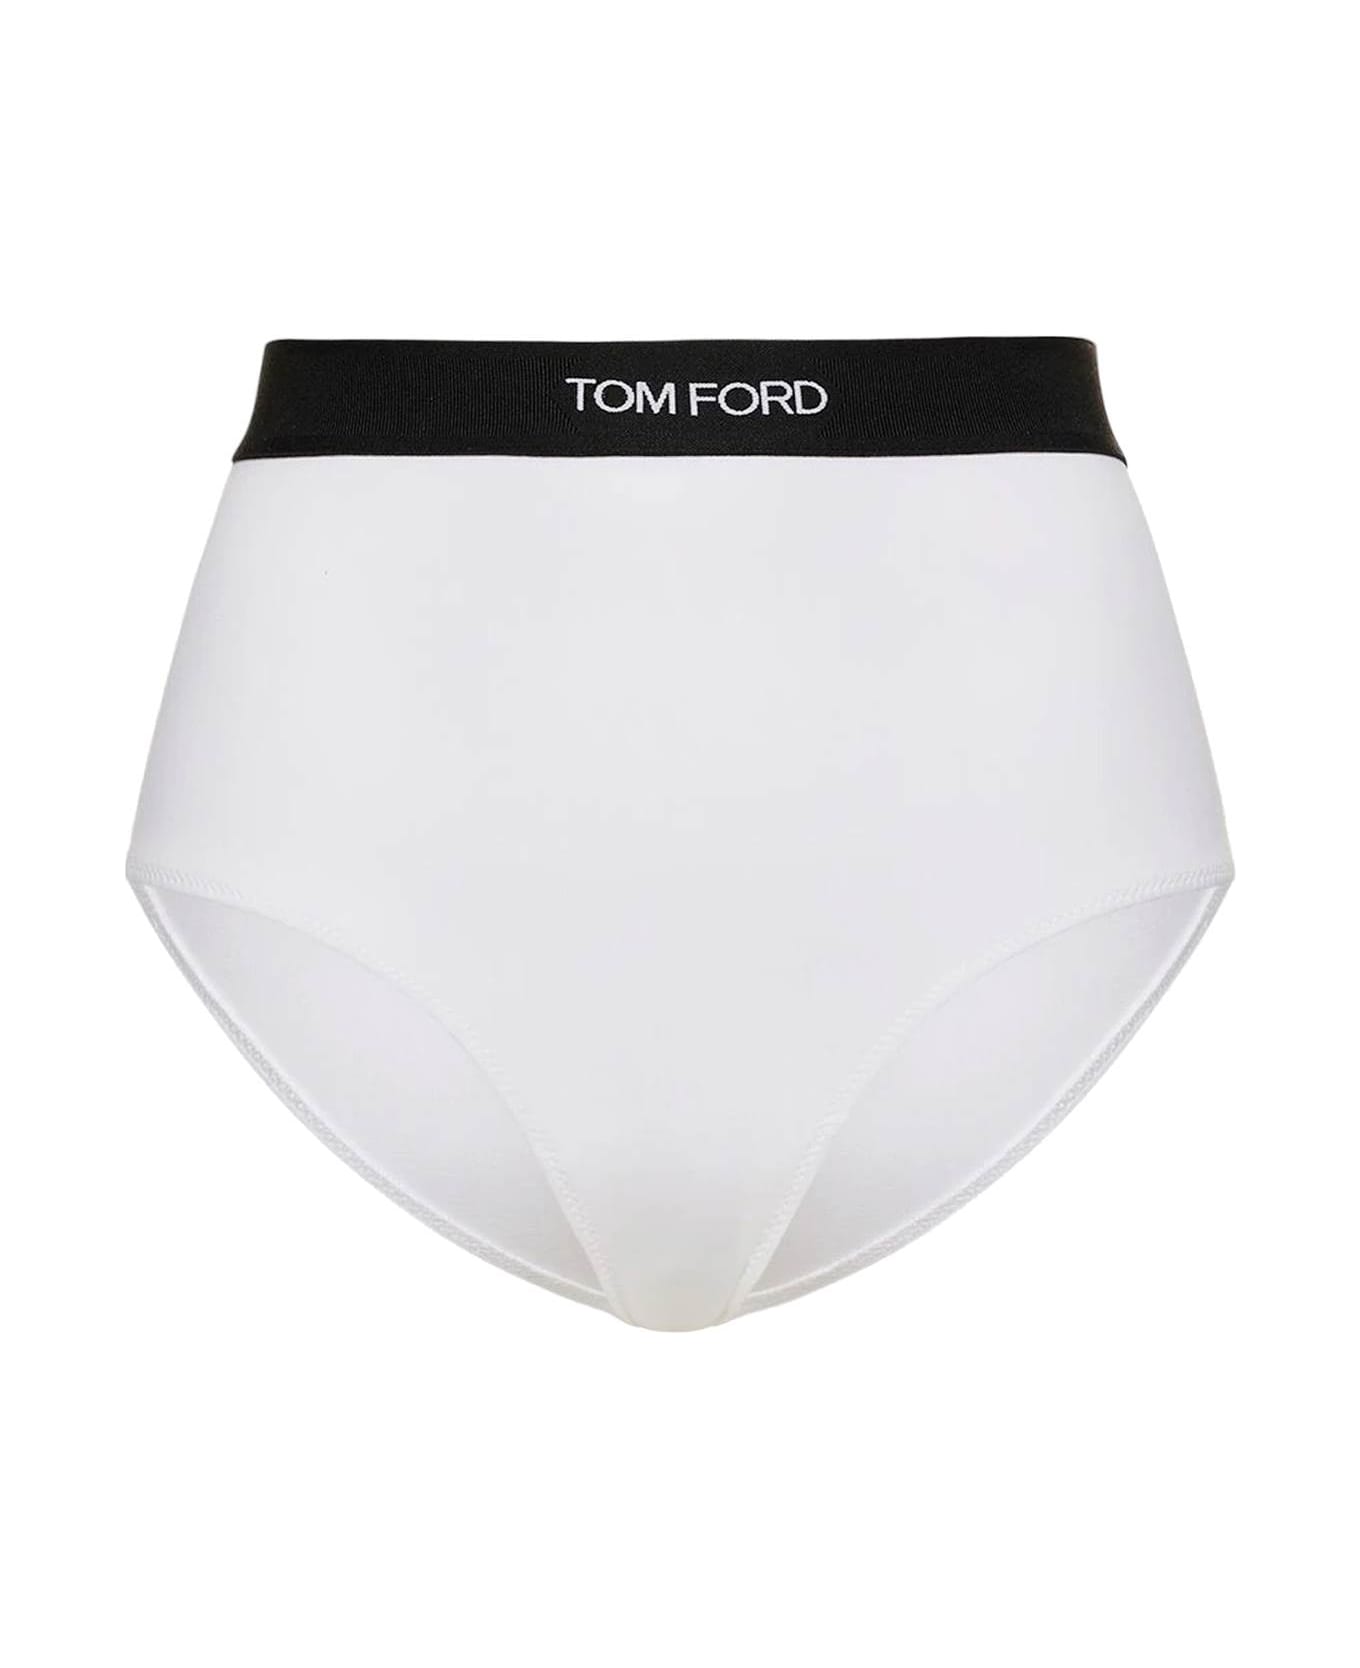 Tom Ford Modal Signature Briefs - WHITE (White) ショーツ